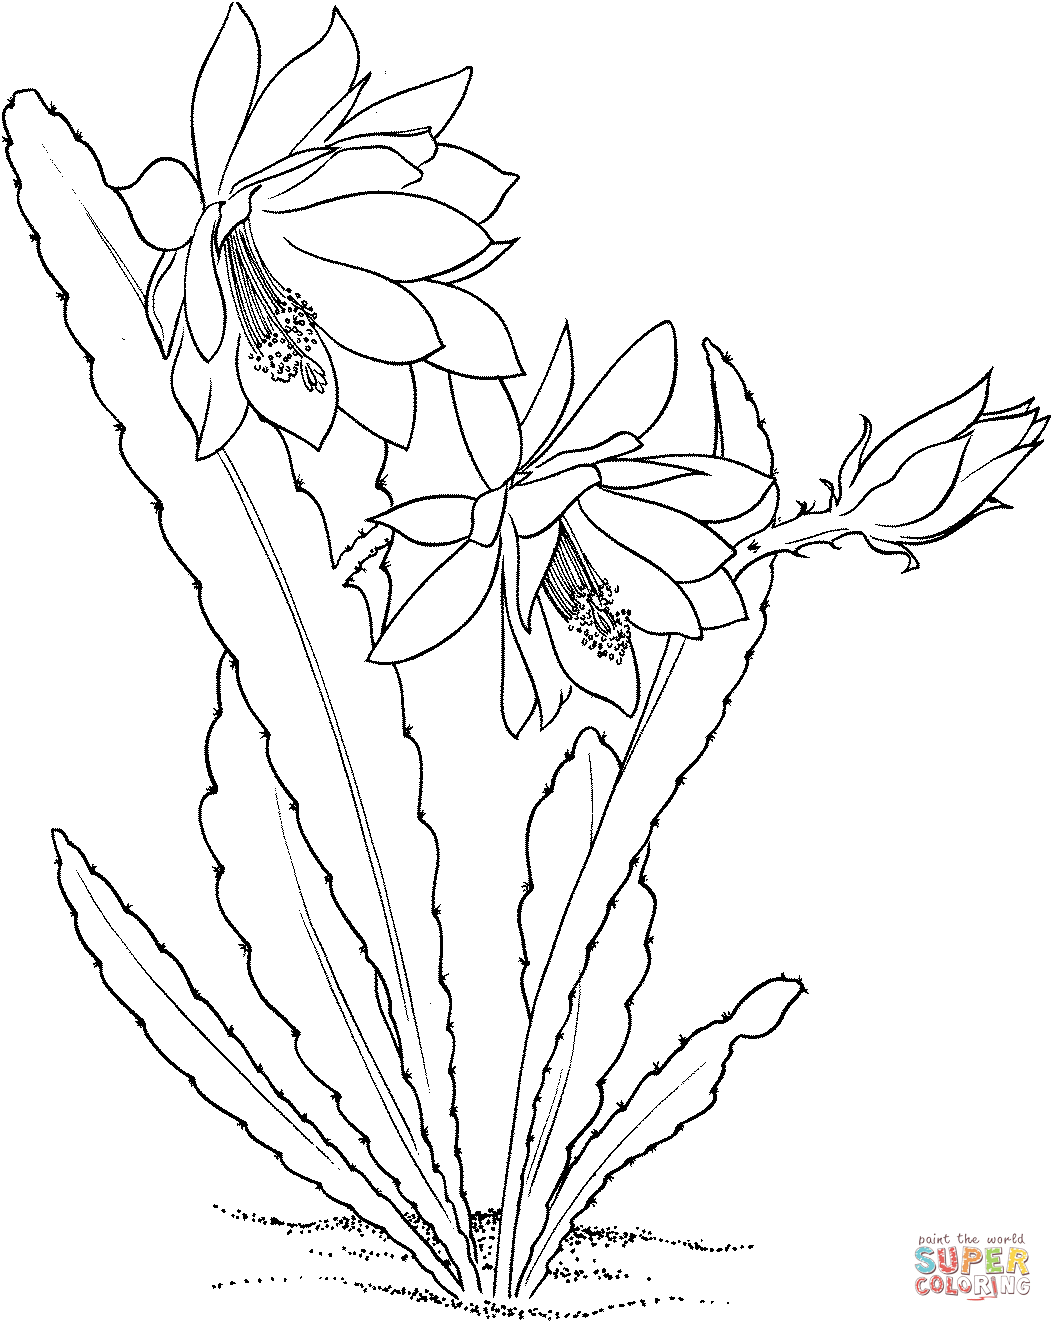 Орхидейный кактус Epiphyllum ackermannii от Cactus